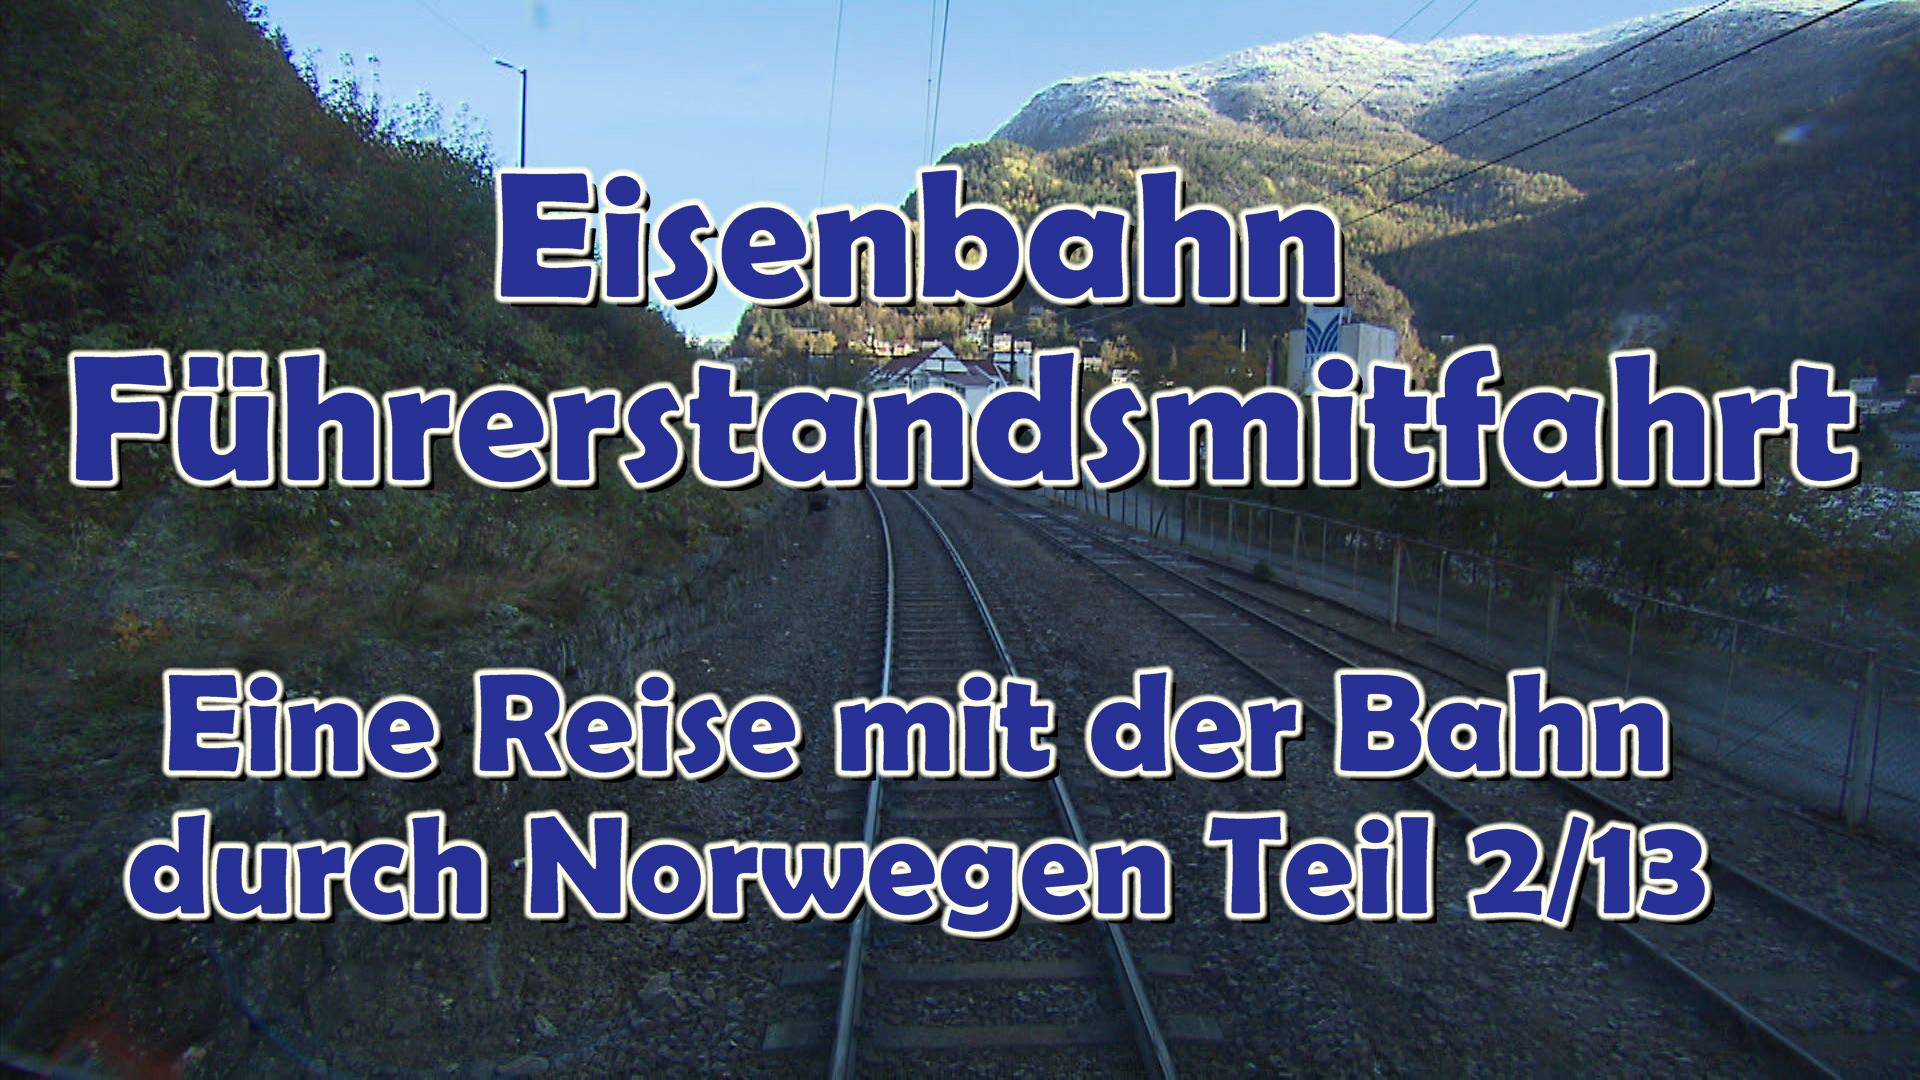 Eisenbahn Führerstandsmitfahrt von Dale bis Voss: Eine Reise durch Norwegen mit der Bahn - Teil 2/13